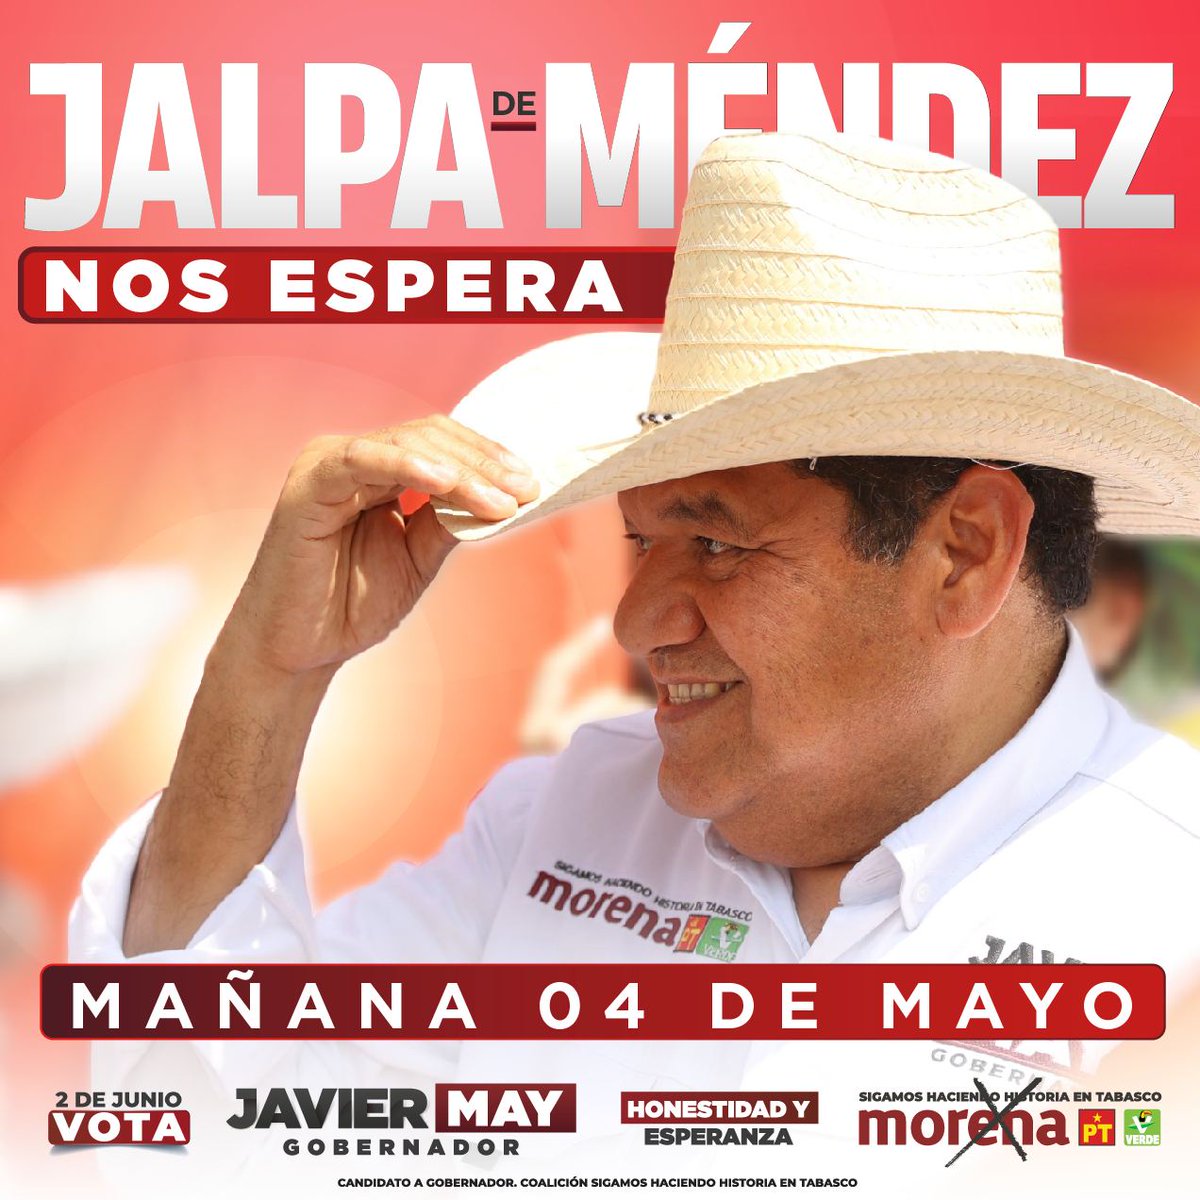 ¡La campaña del pueblo no se detiene! Mañana nos vemos en Jalpa de Méndez.